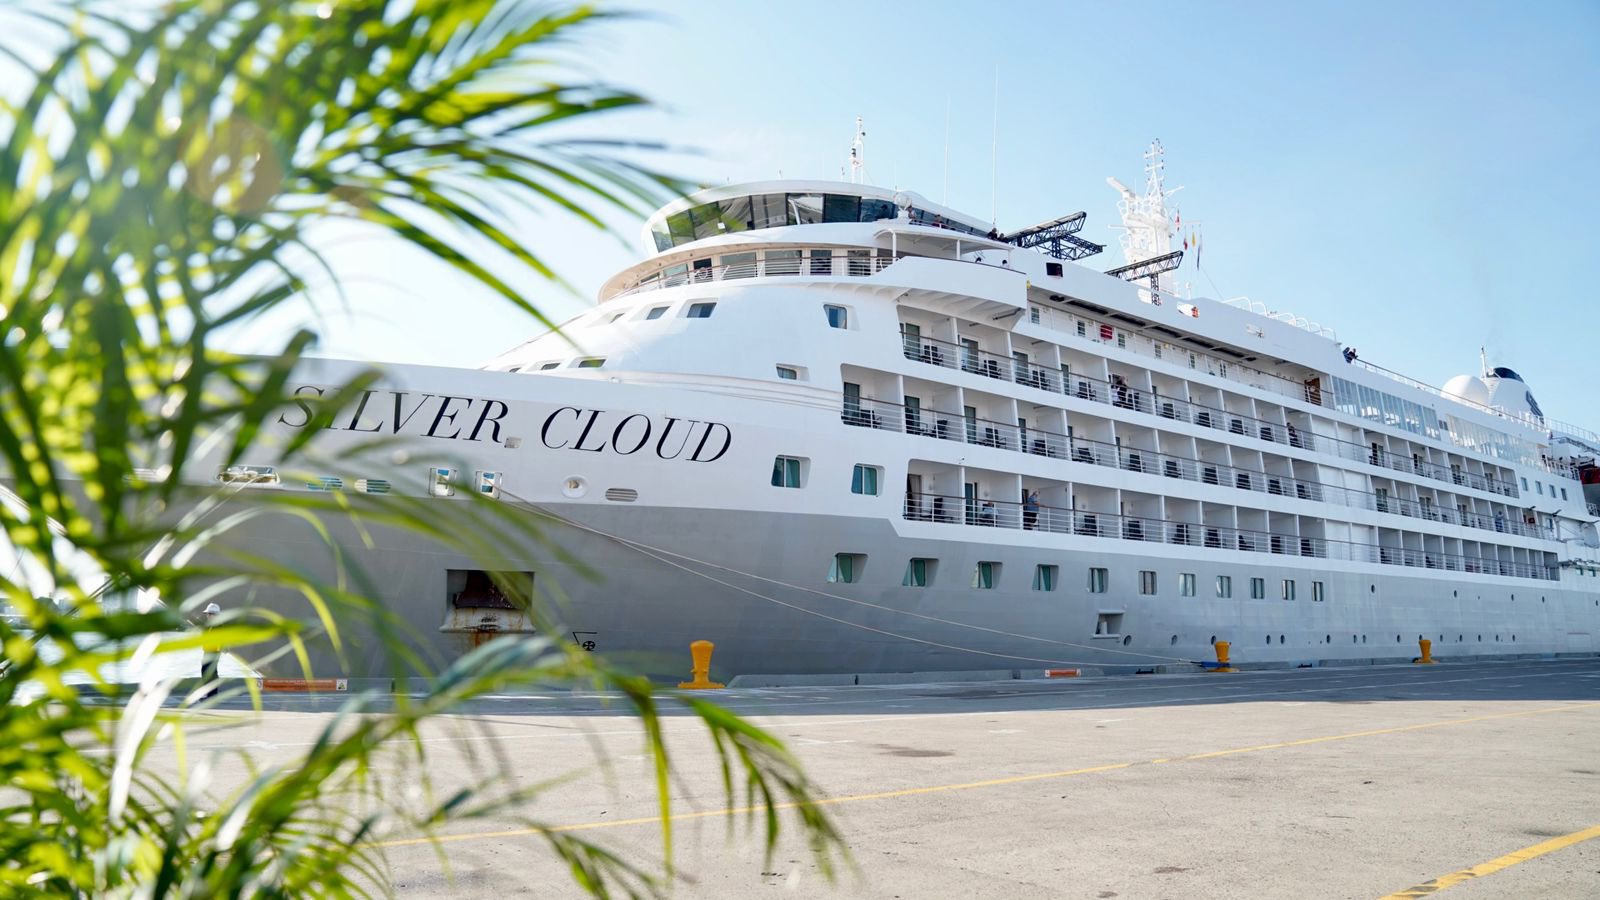 El Silver Cloud que arribó al terminal de cruceros de Cartagena